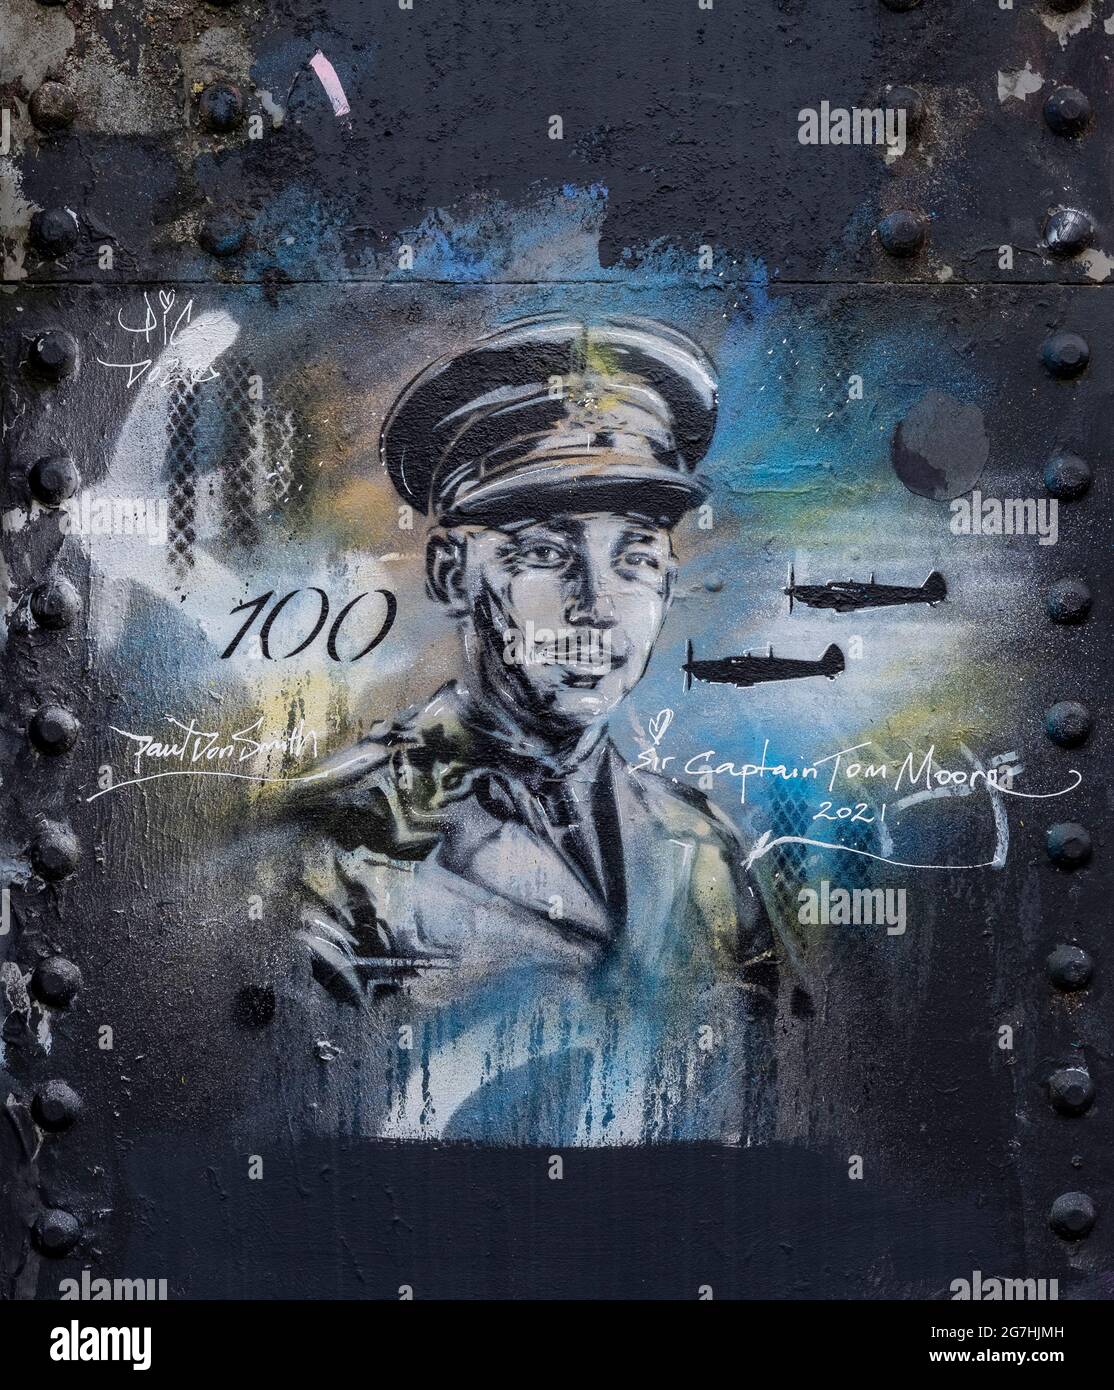 L'art de la rue sur un pont à Camden Town représentant le capitaine Tom Moore de Sir a célébré pour sa collecte de fonds dans sa 100e année durant la pandémie de Covid Banque D'Images